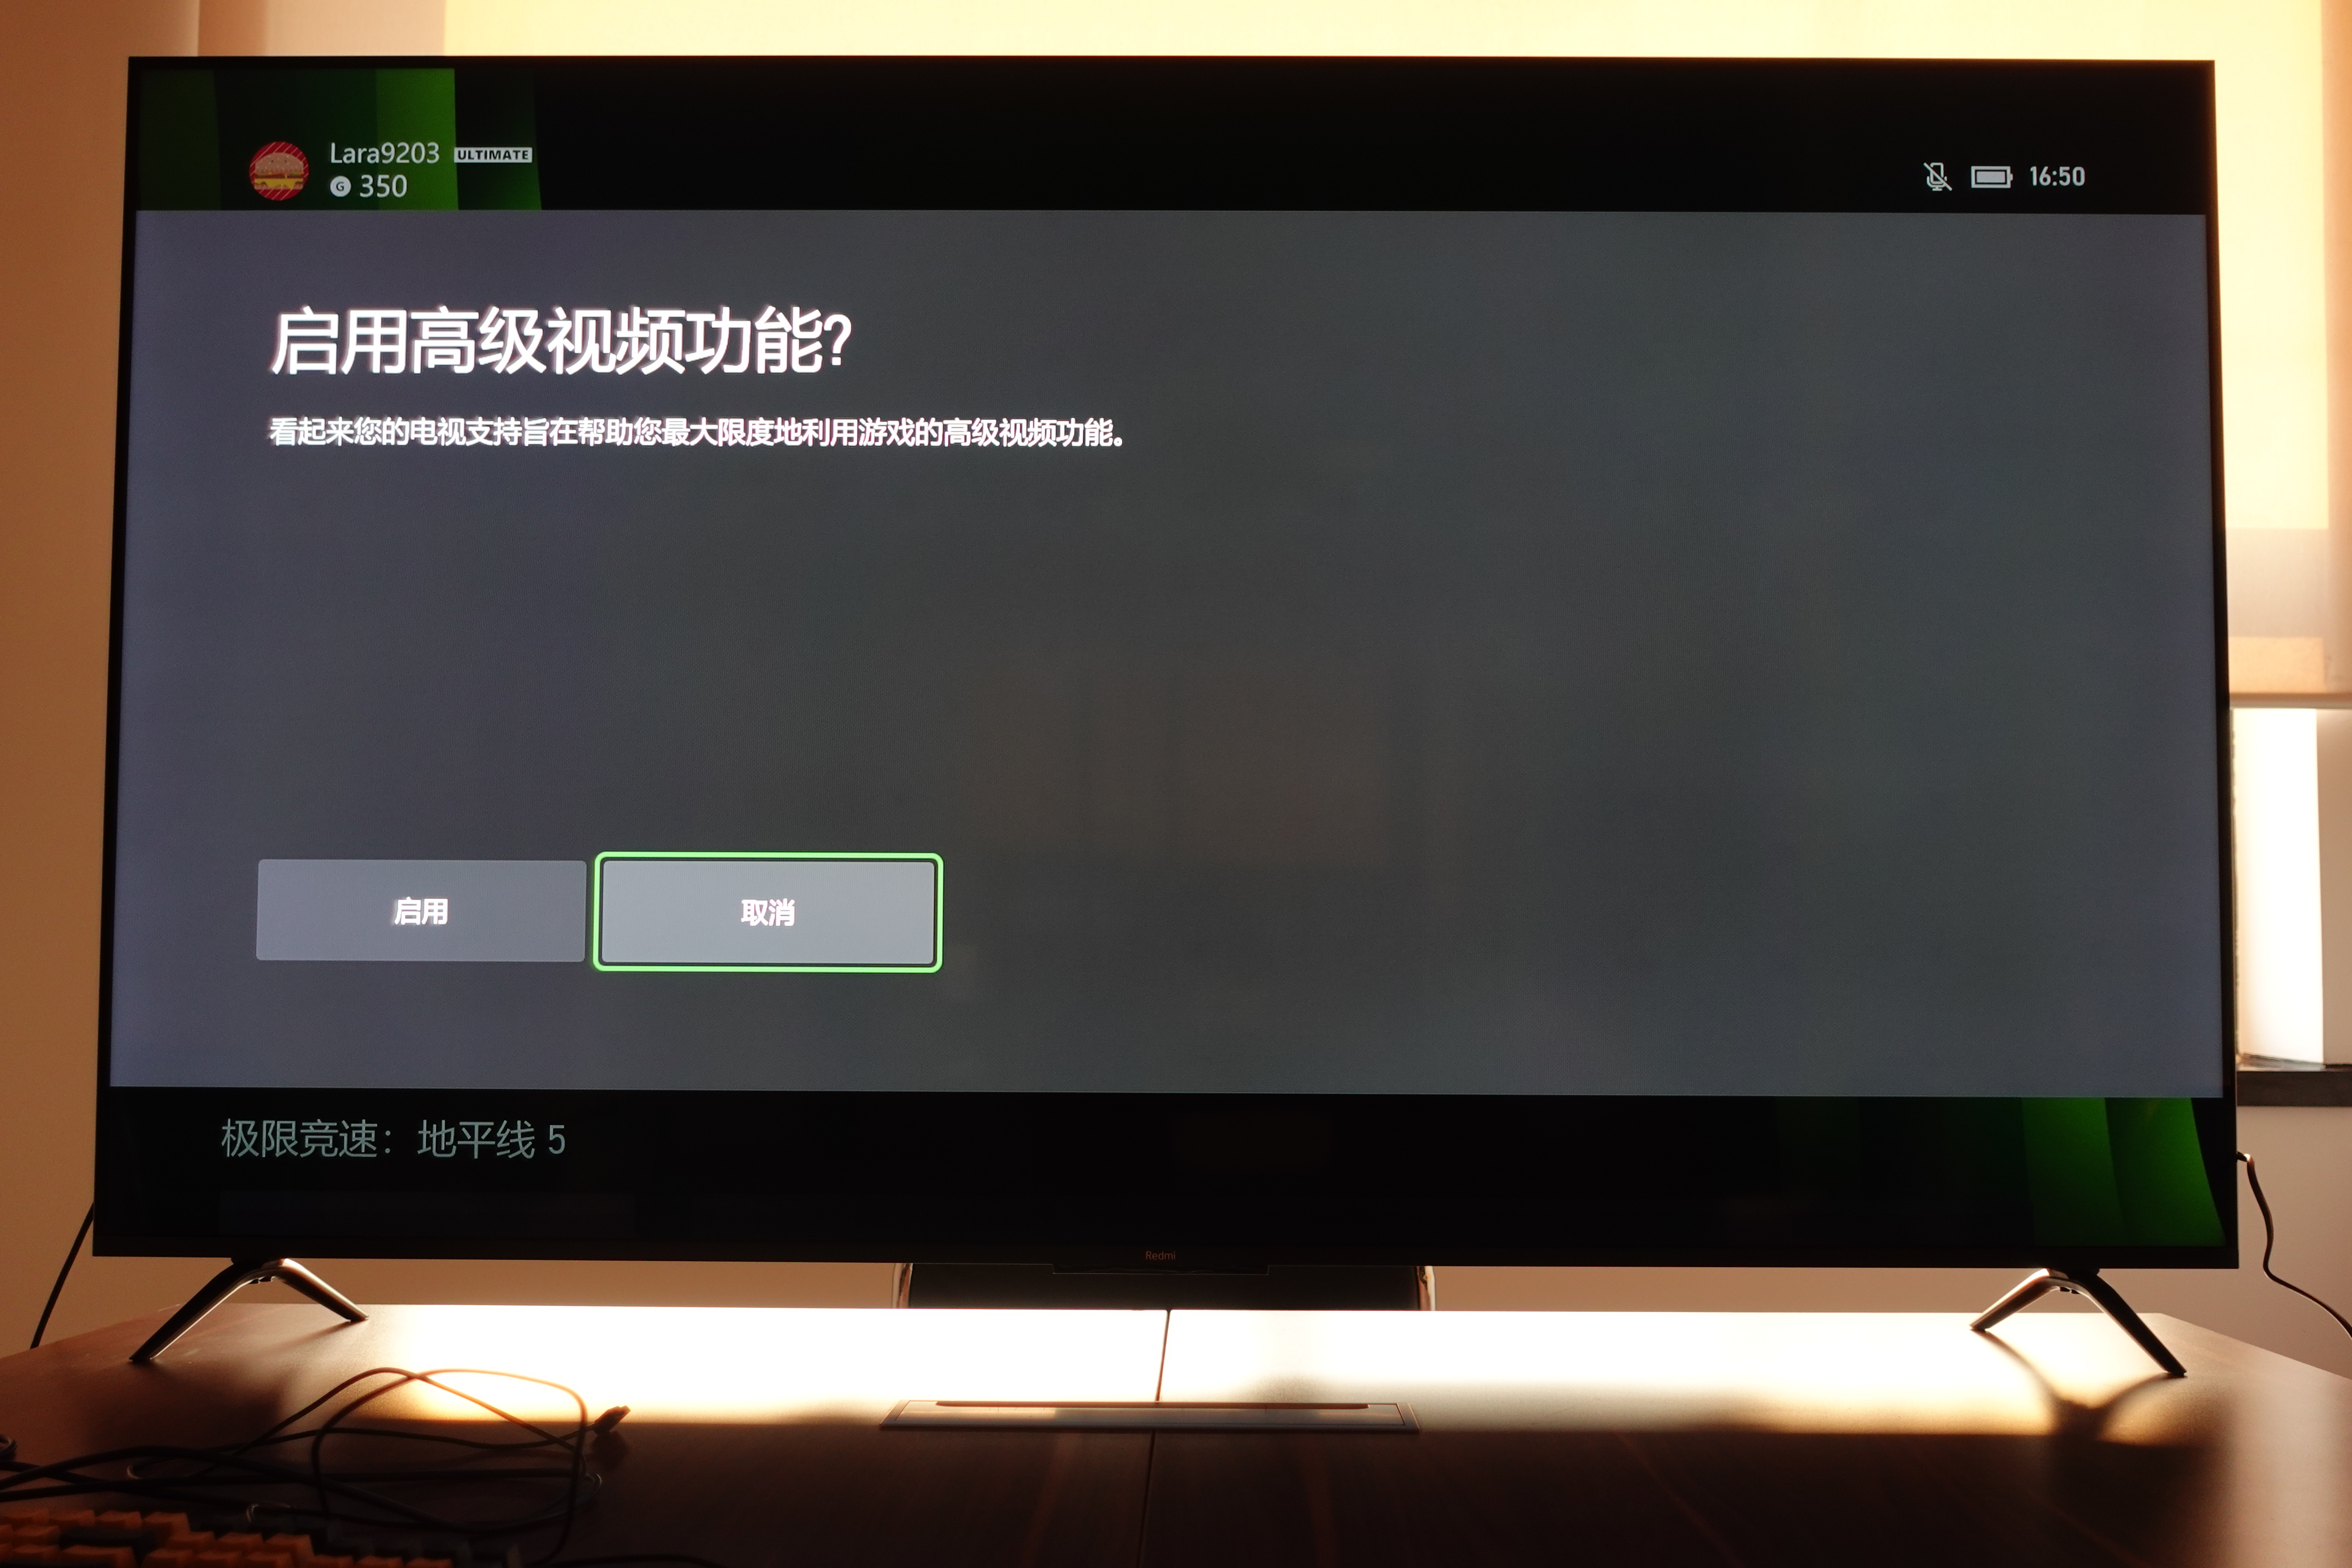 Xbox Sereis X 首次接入電視後會自動調整輸出配置